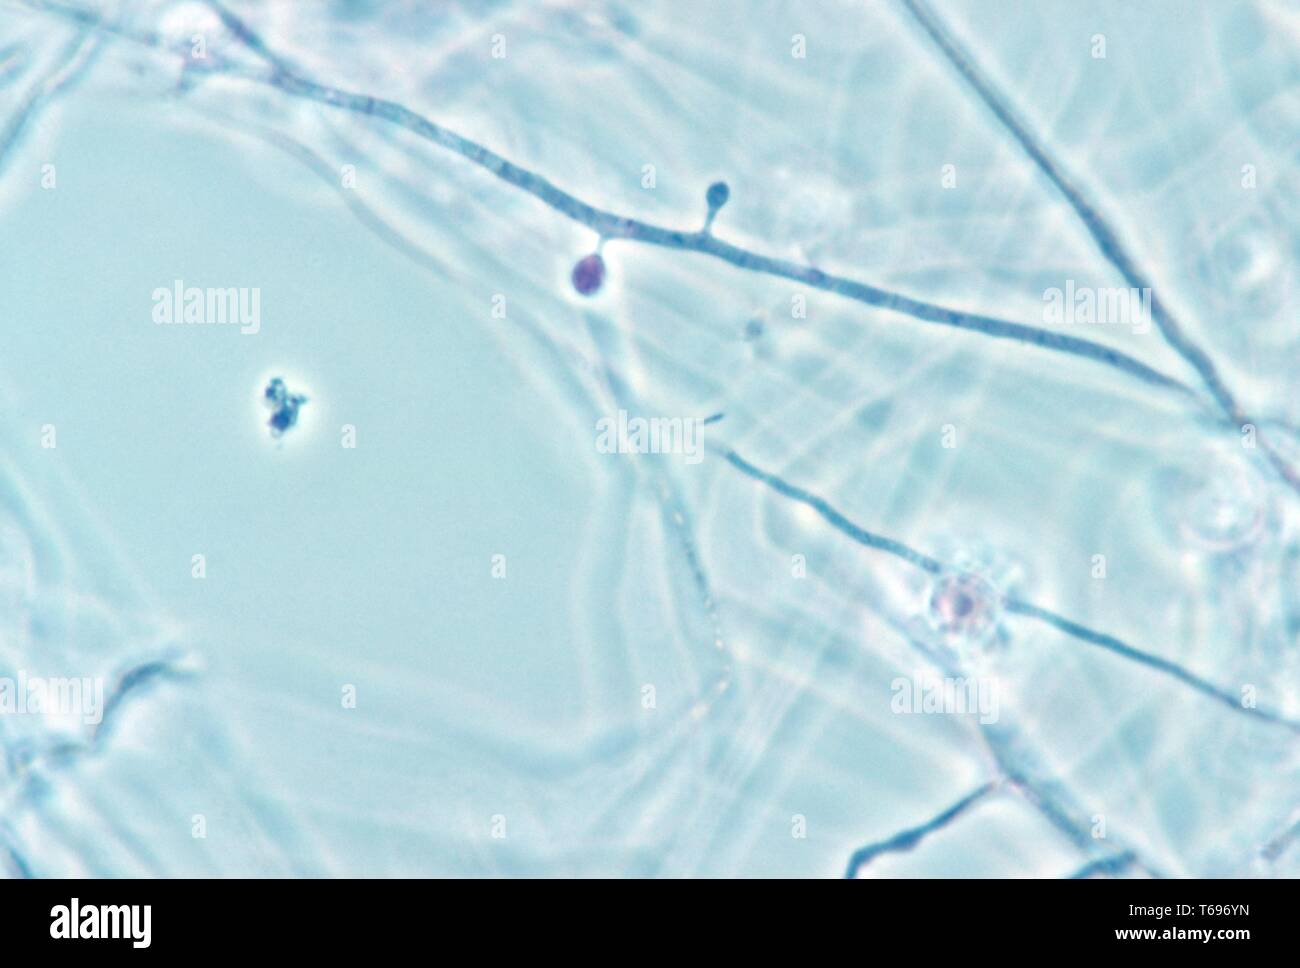 Der Photomicrograph microconidia der dimorphic Pilz Histoplasma capsulatum, 1961. Bild mit freundlicher Genehmigung Zentren für Krankheitskontrolle und Prävention (CDC)/Dr Lucille K. Georg. () Stockfoto